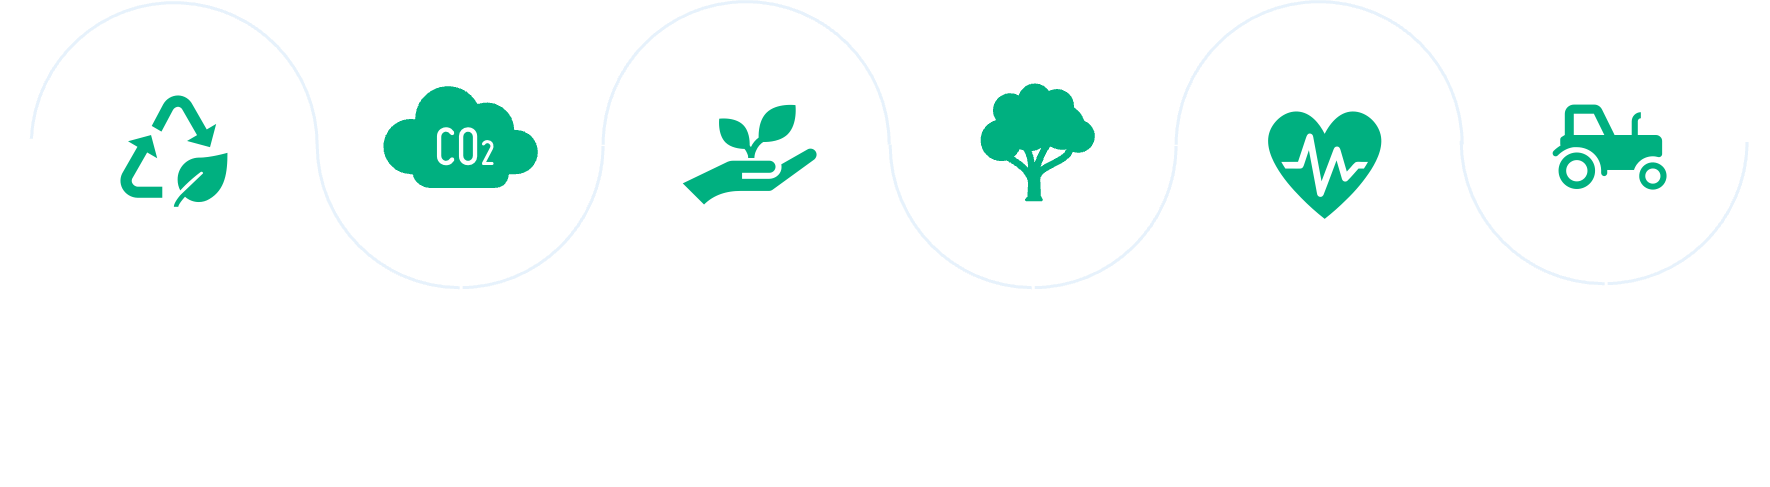 Nachhaltigkeit bei BIOVOX